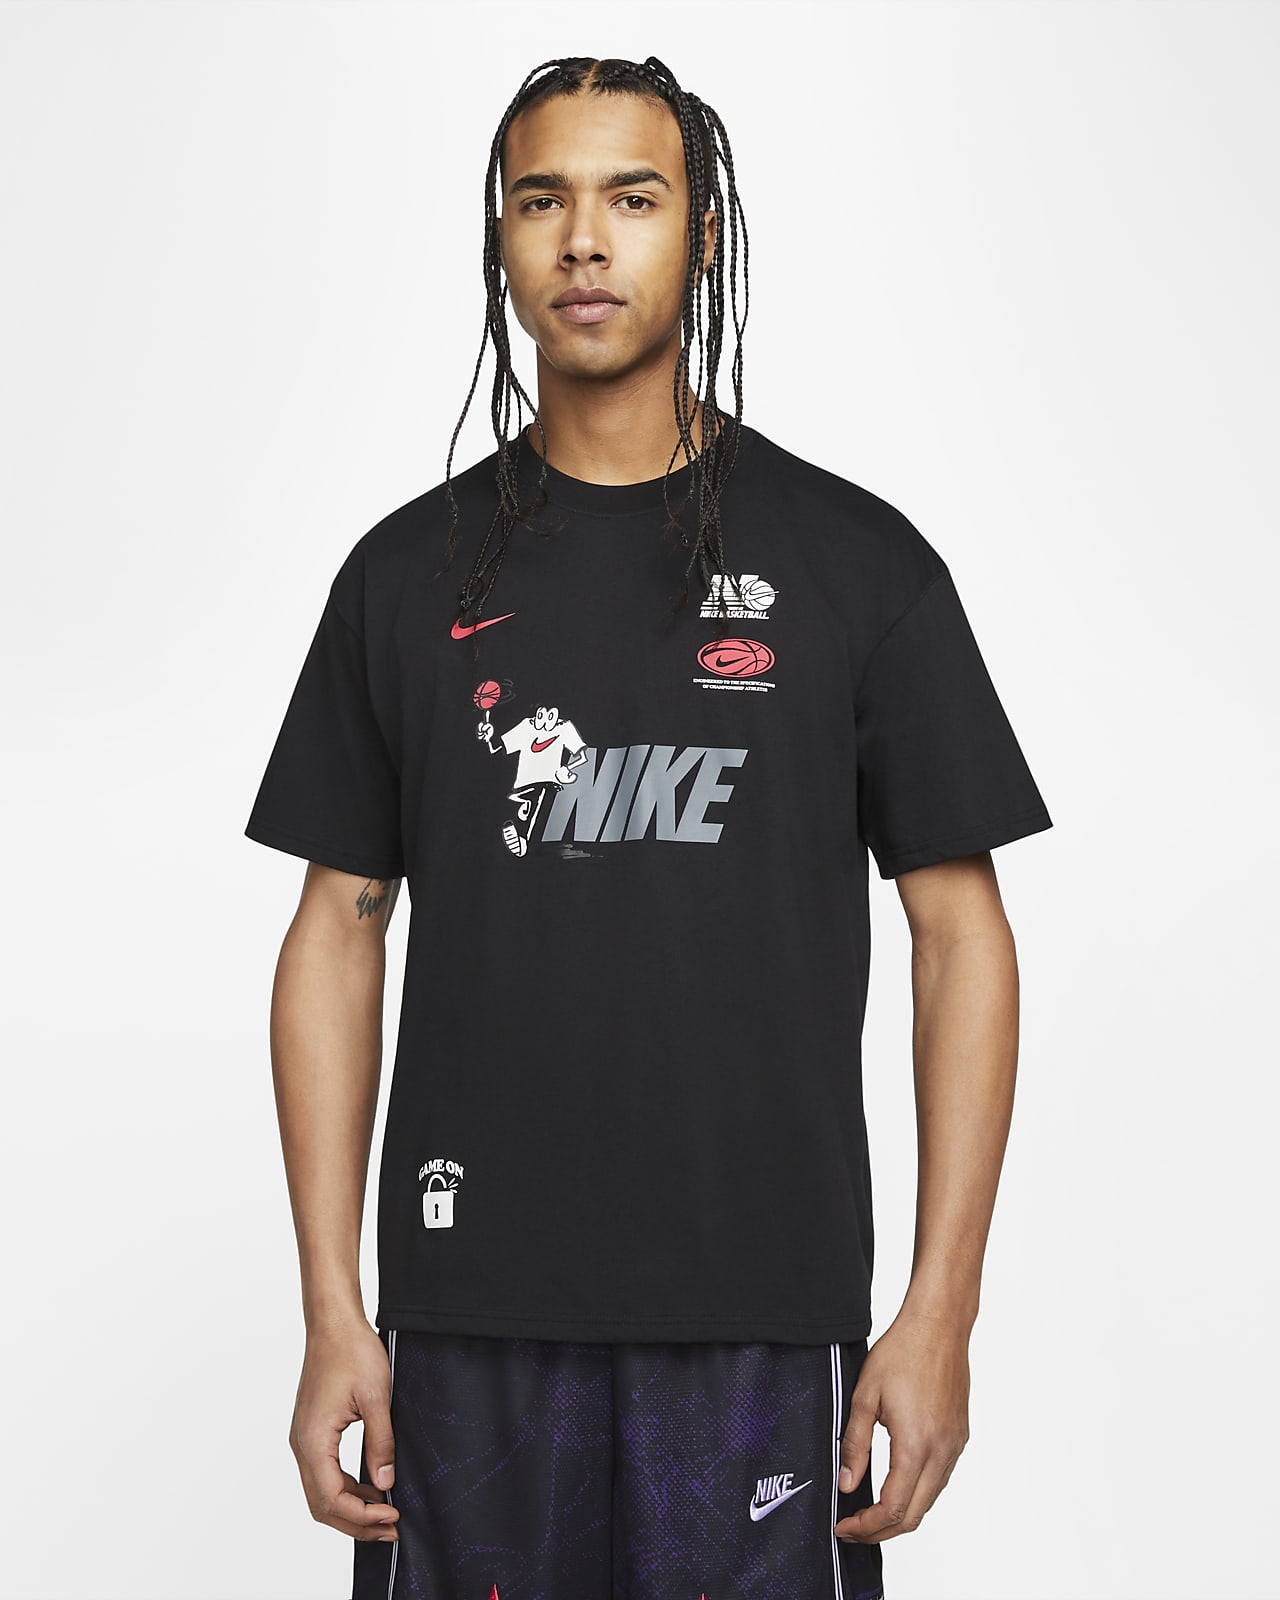 Mentor Especificidad Rítmico Nike Men's Basketball T-Shirt. Nike.com